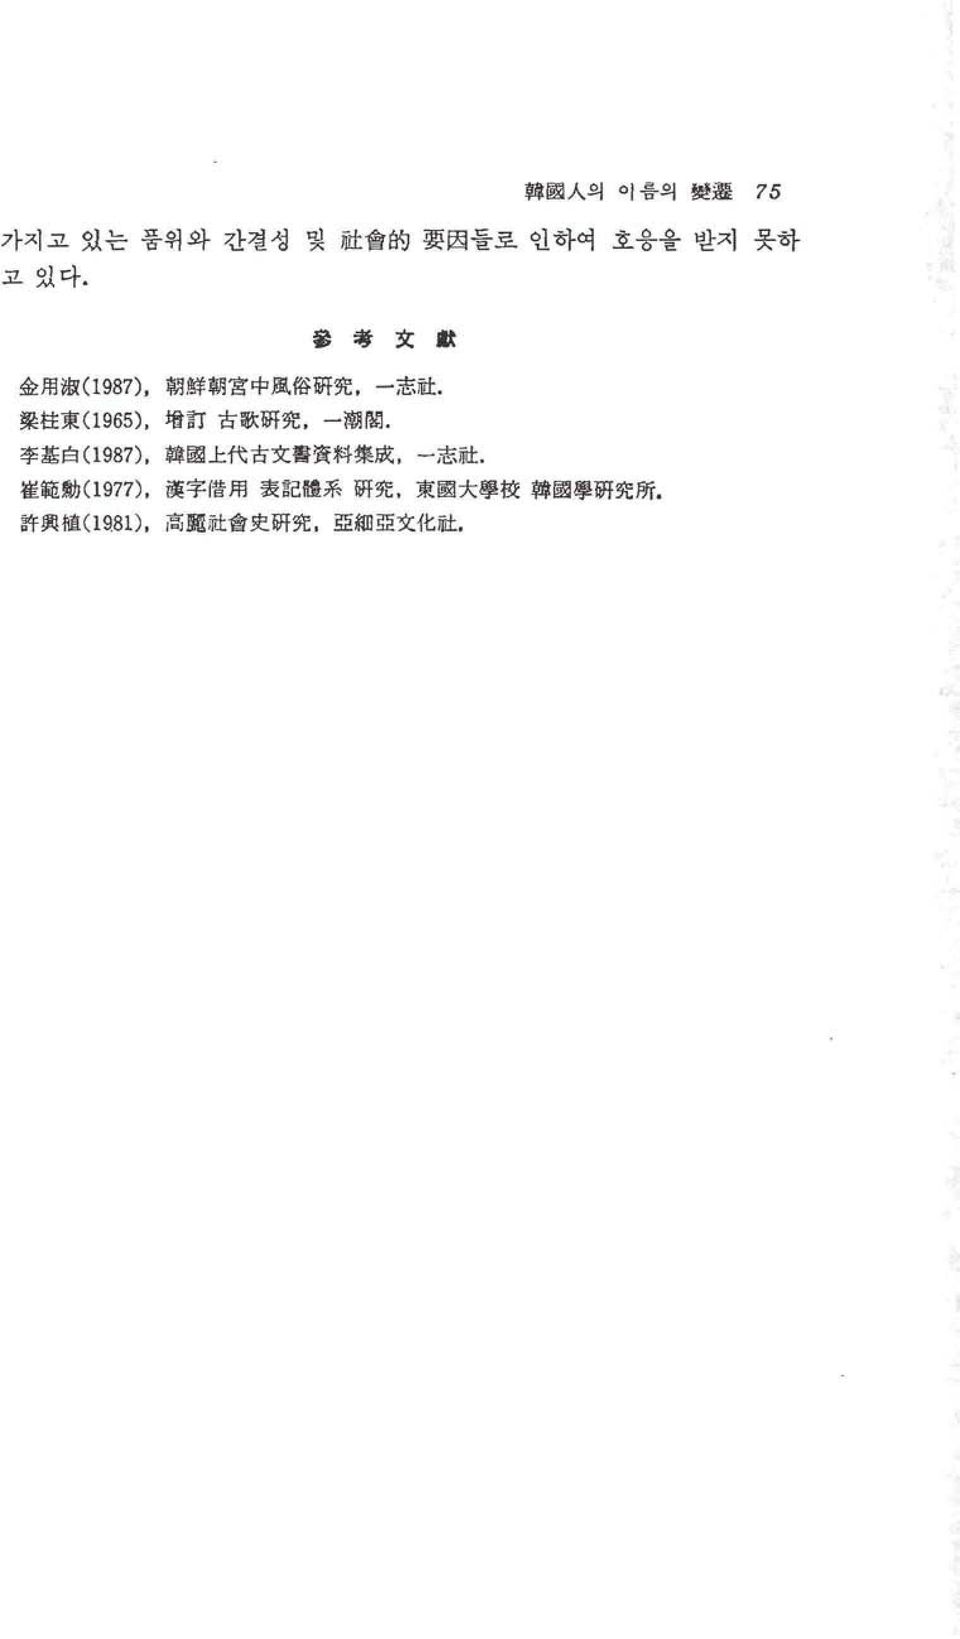 聚 柱 東 (1 965), 增 訂 古 歌 litf 究, 一 랩껴뼈. 李 基 白 (1 987), 韓 國 上 代 古 文 홉홉 料 集 成 志 社.